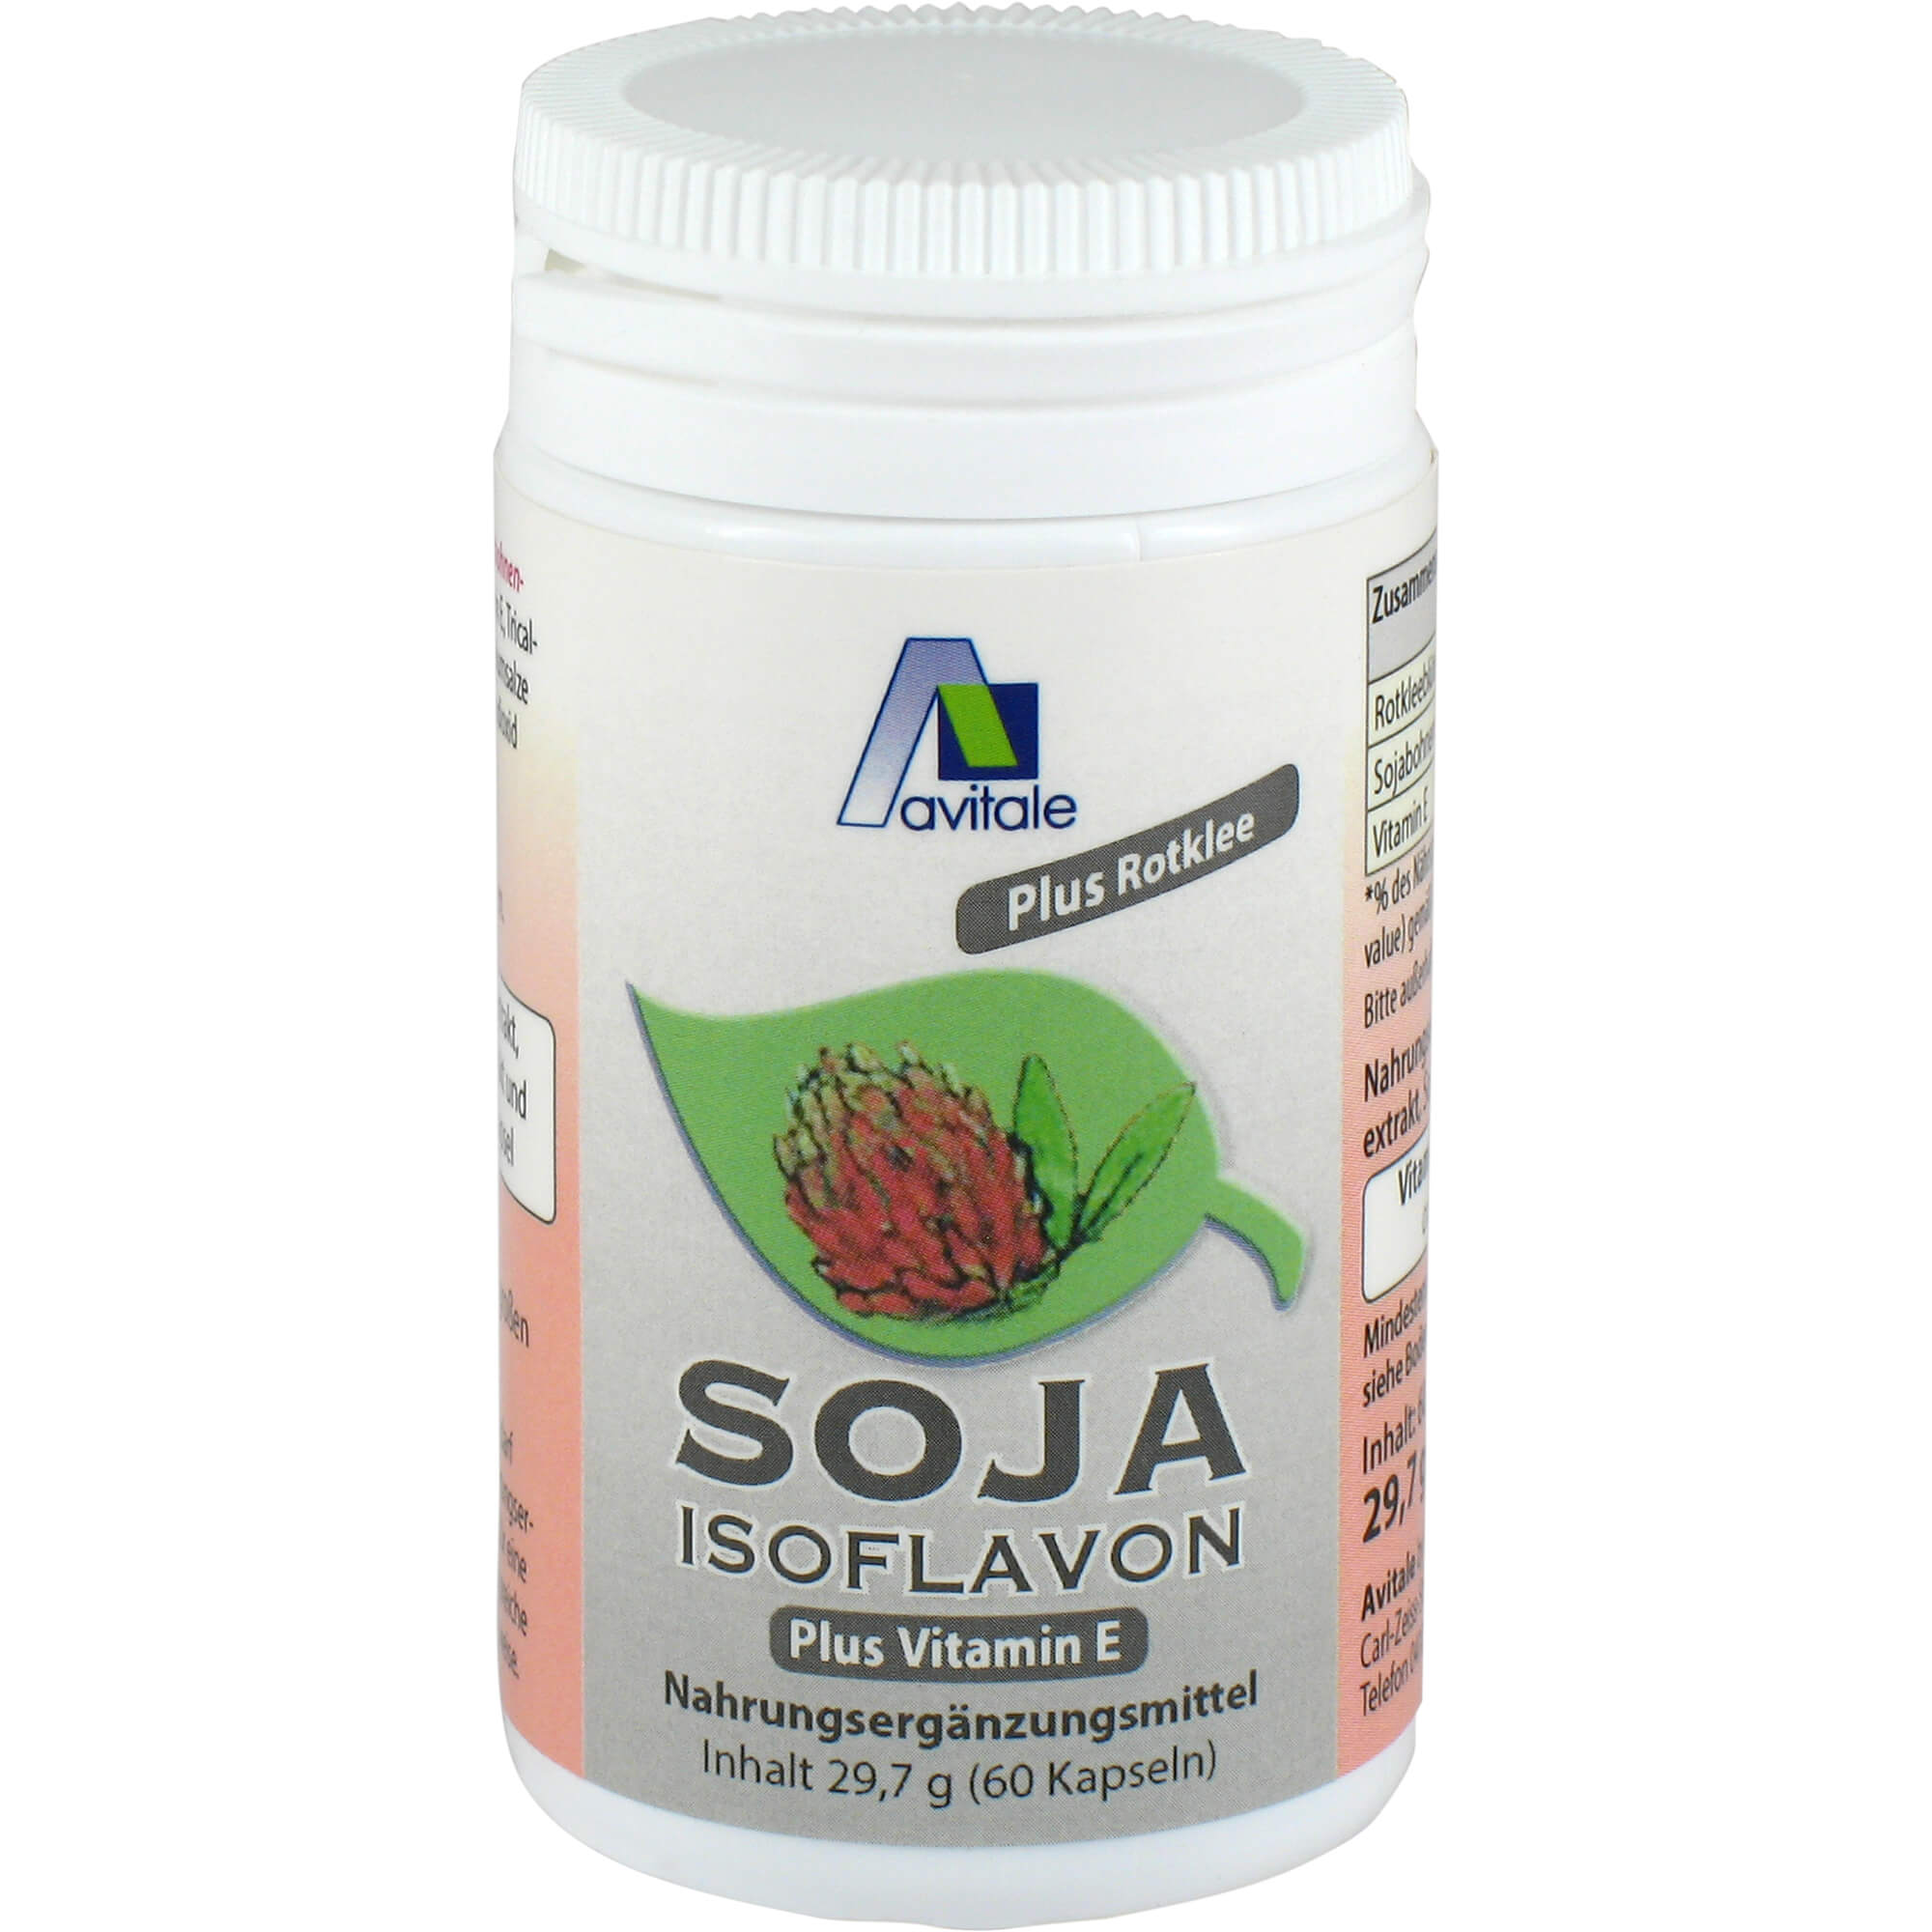 Nahrungsergänzungsmittel mit Soja-Isoflavon-Extrakt, Rotklee Extrakt und Vitamin E.